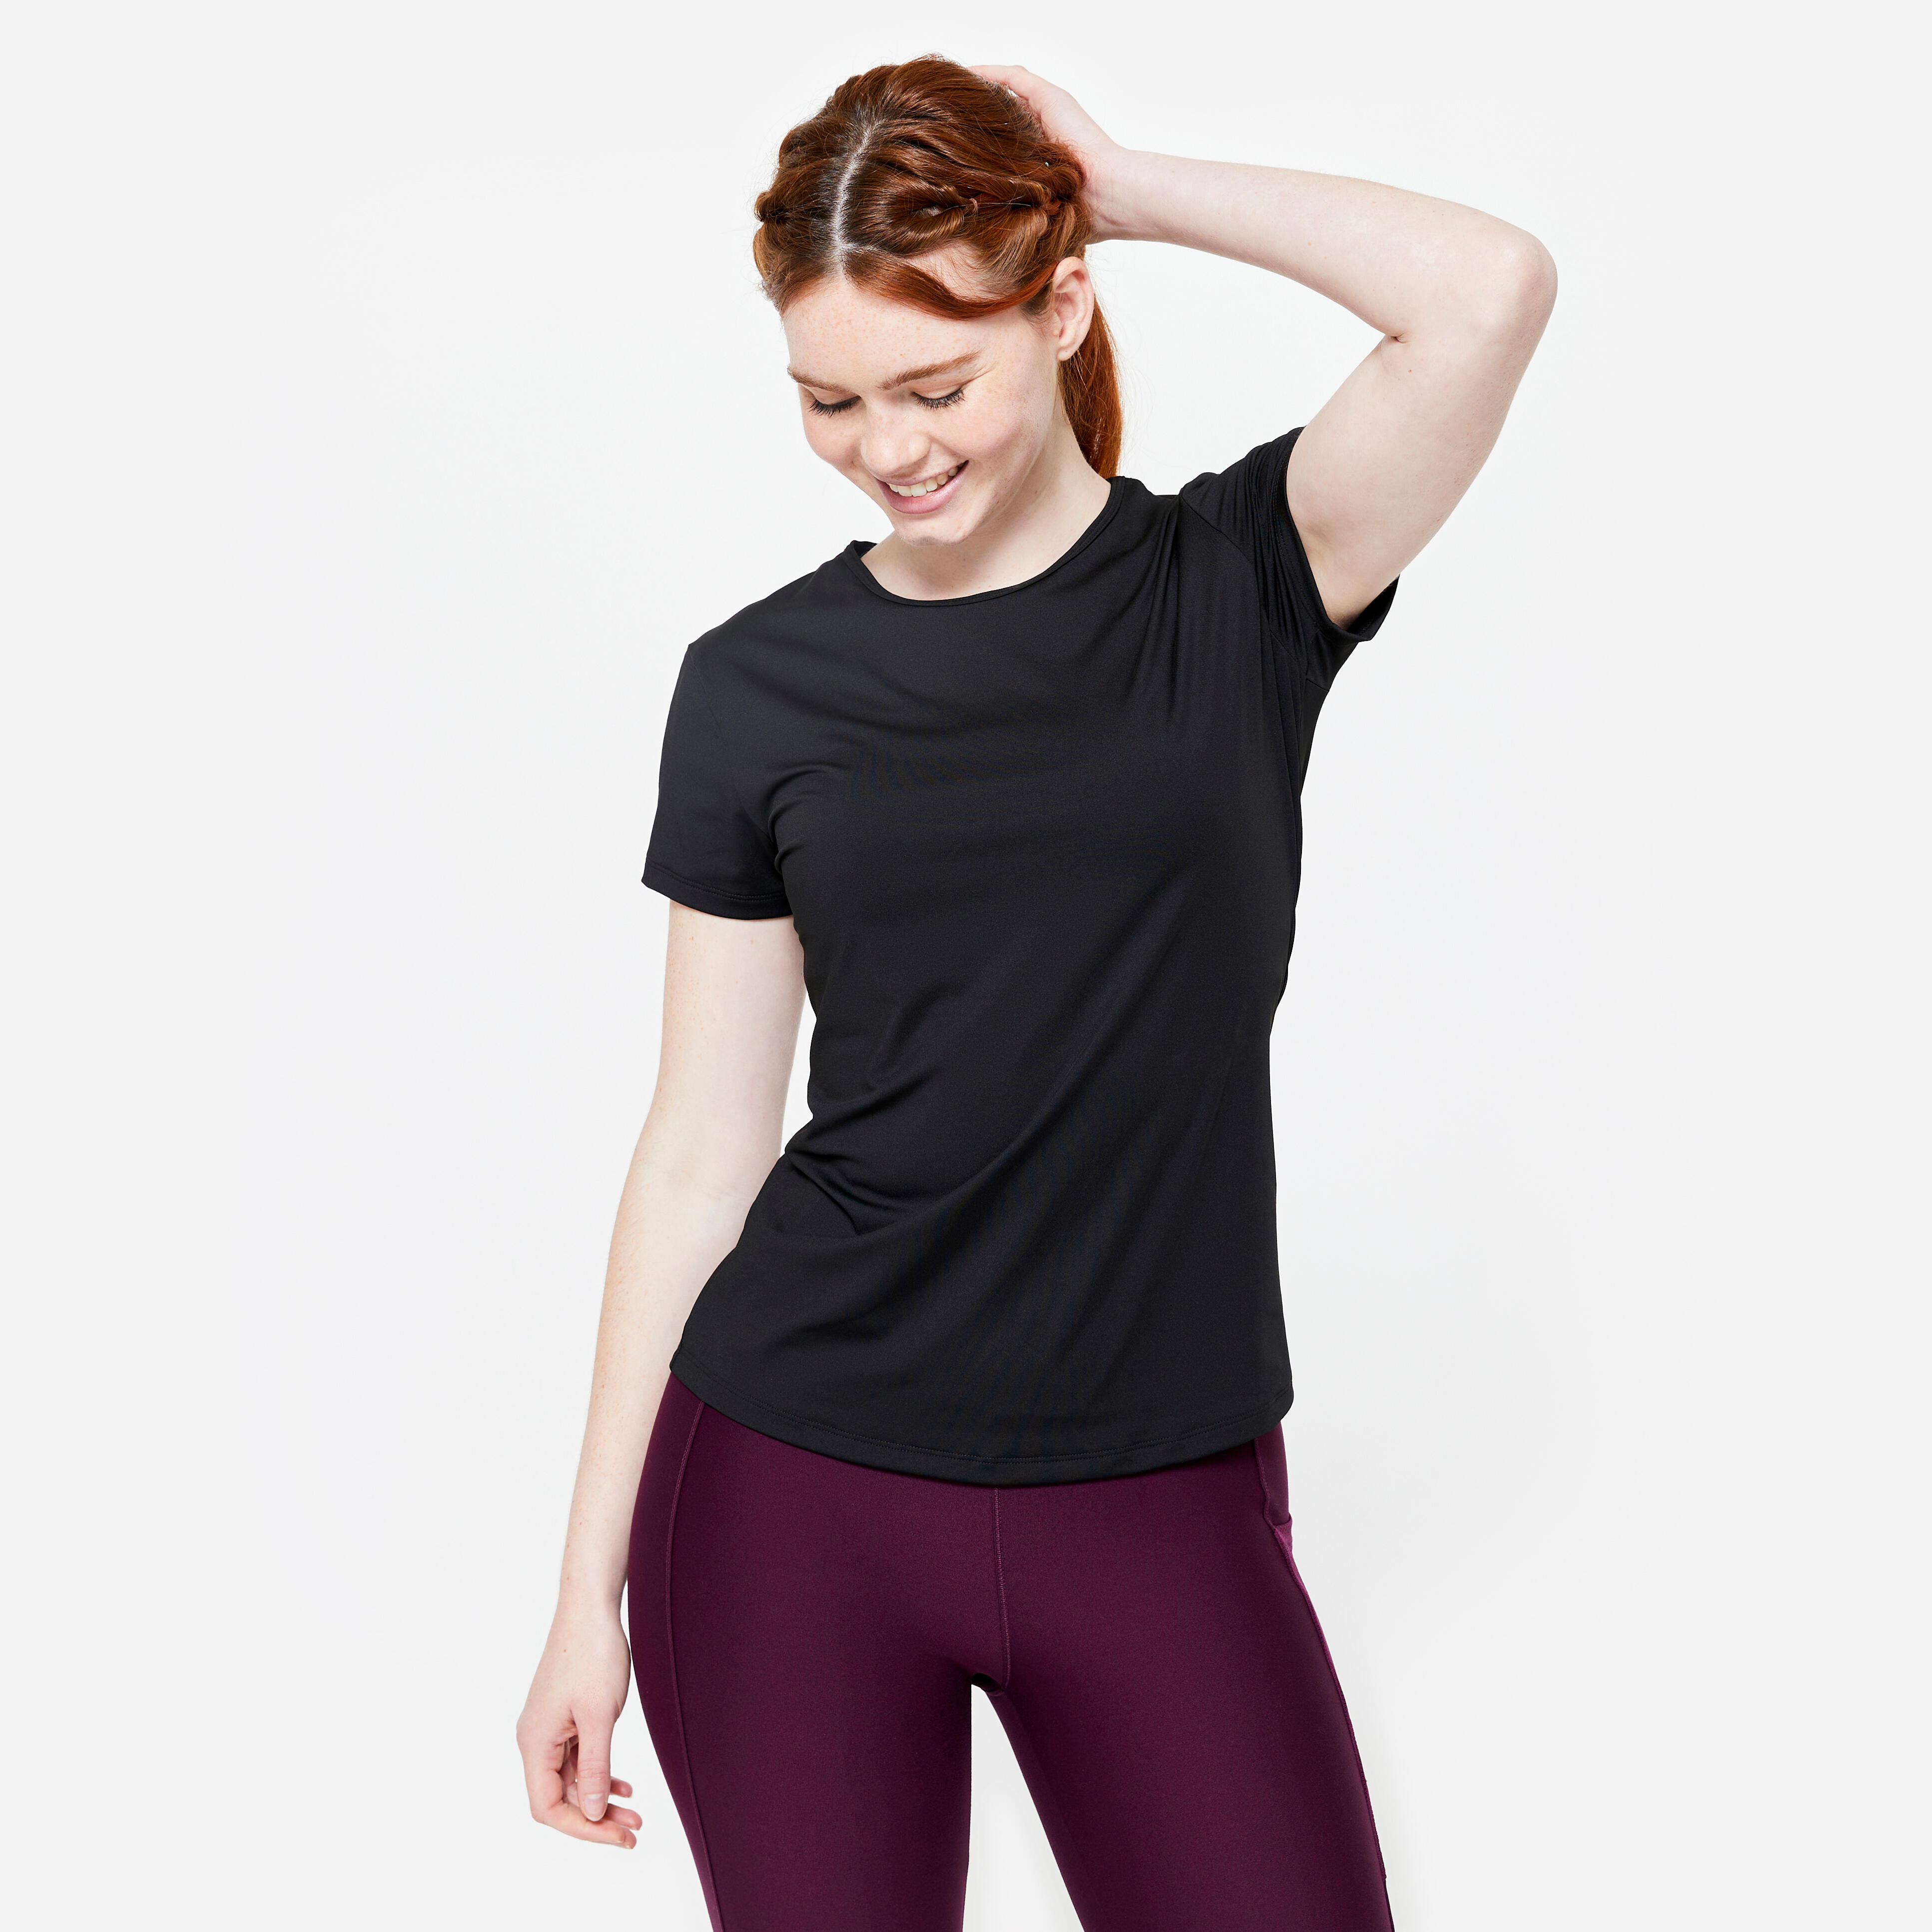 Women's Fitness T-Shirt